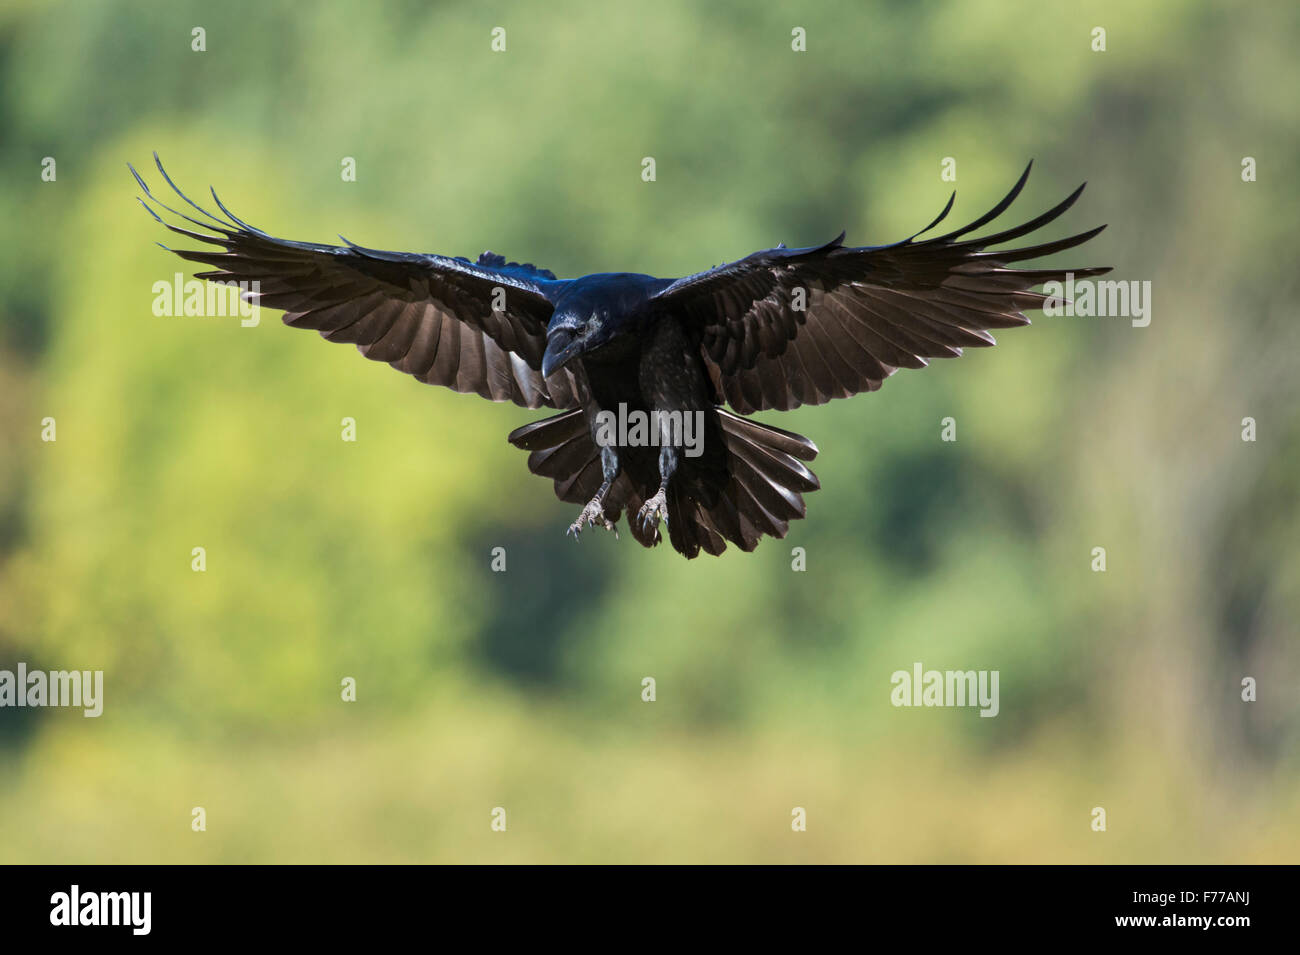 Grand Corbeau Corvus corax / Kolkrabe ( ) juste avant l'atterrissage, en face de bois verts brouillée. Banque D'Images